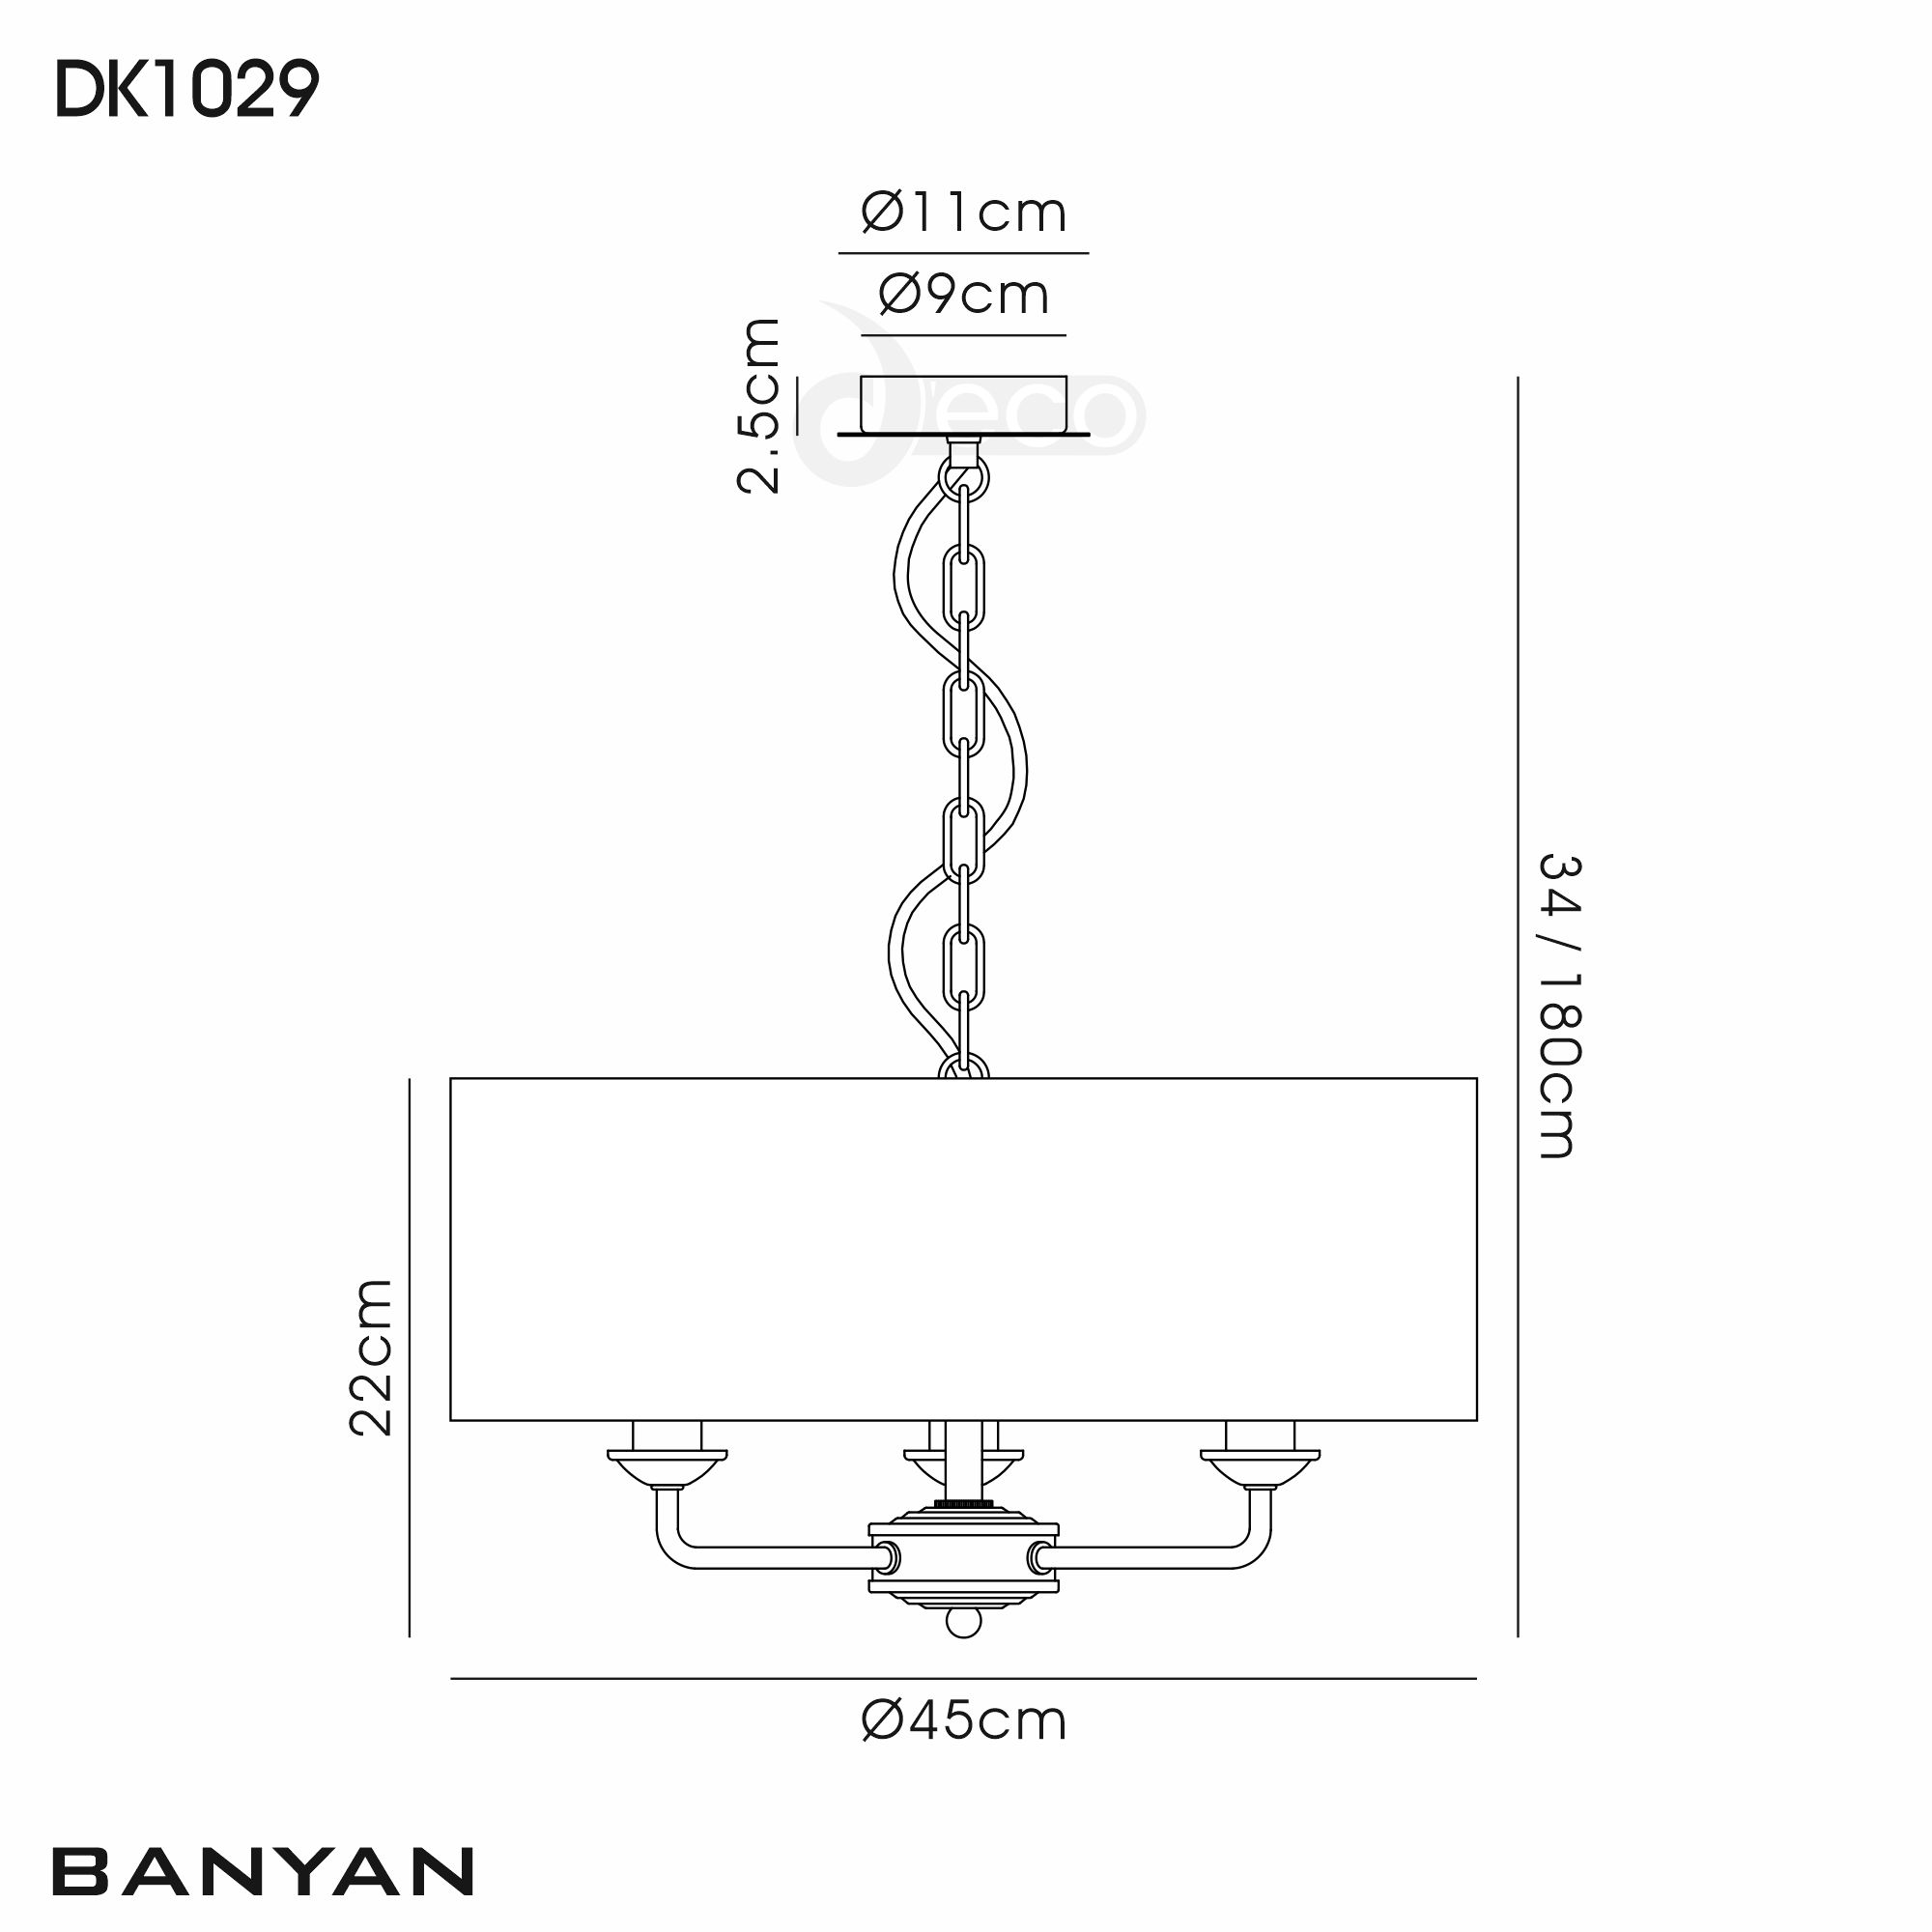 DK1029  Banyan 45cm 3 Light Pendant Matt Black, Soft Bronze